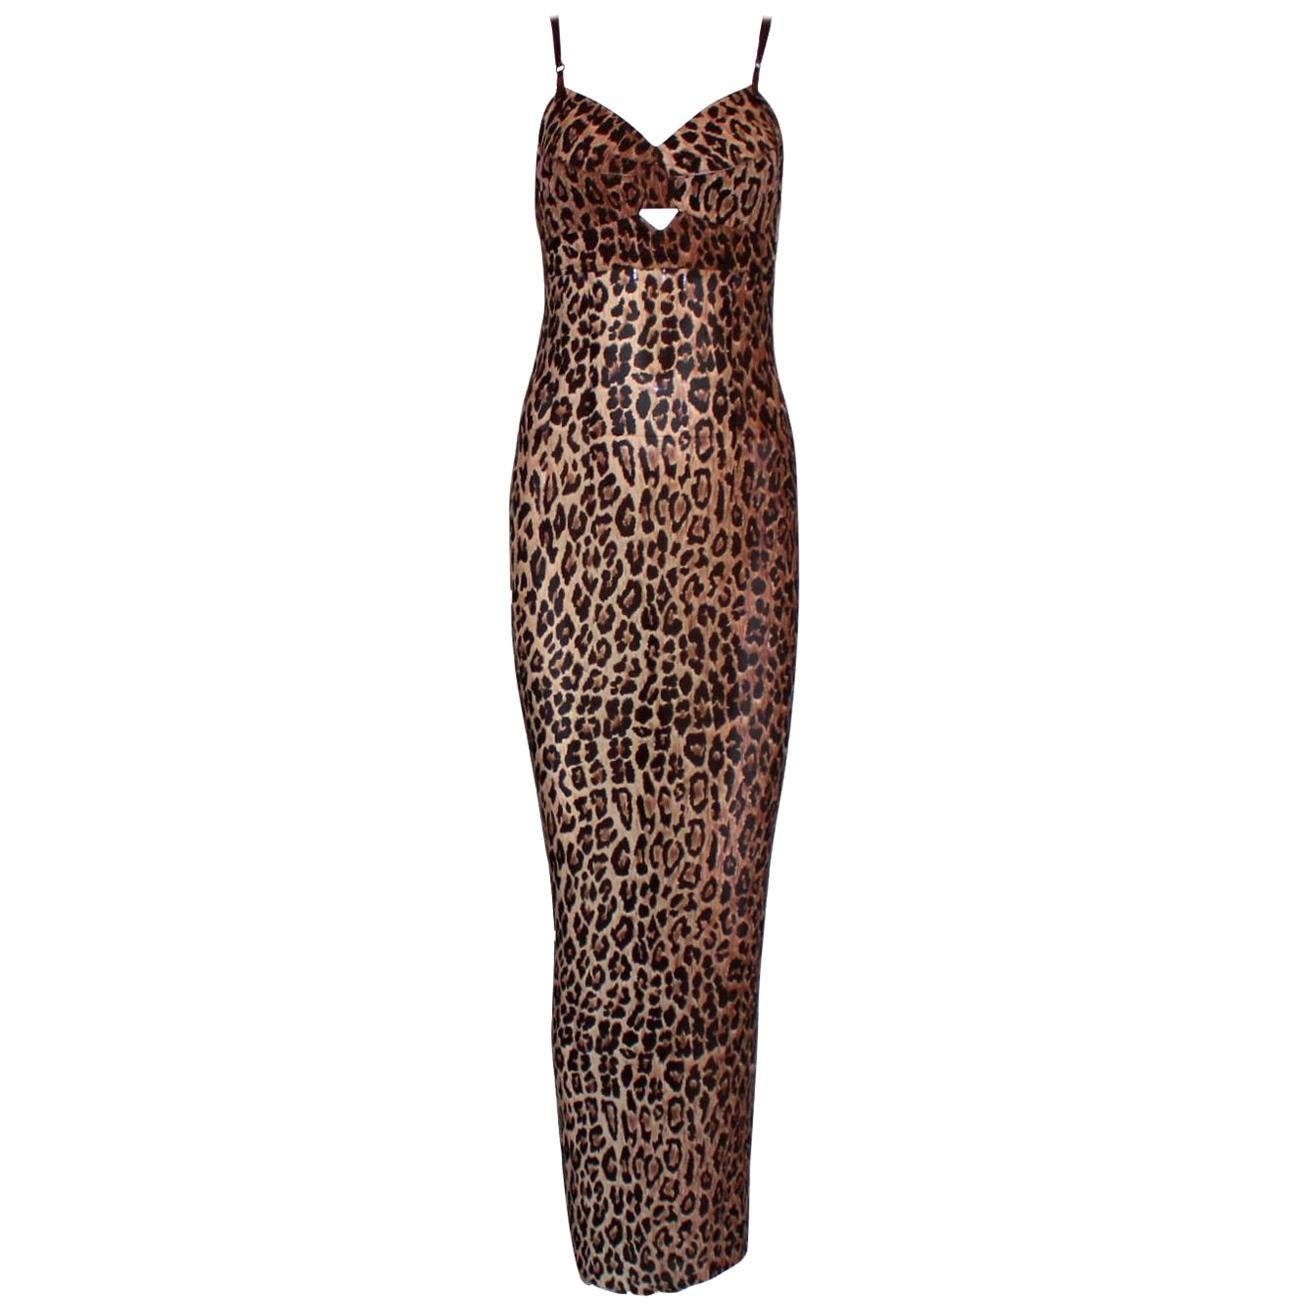 dolce and gabbana cheetah dress